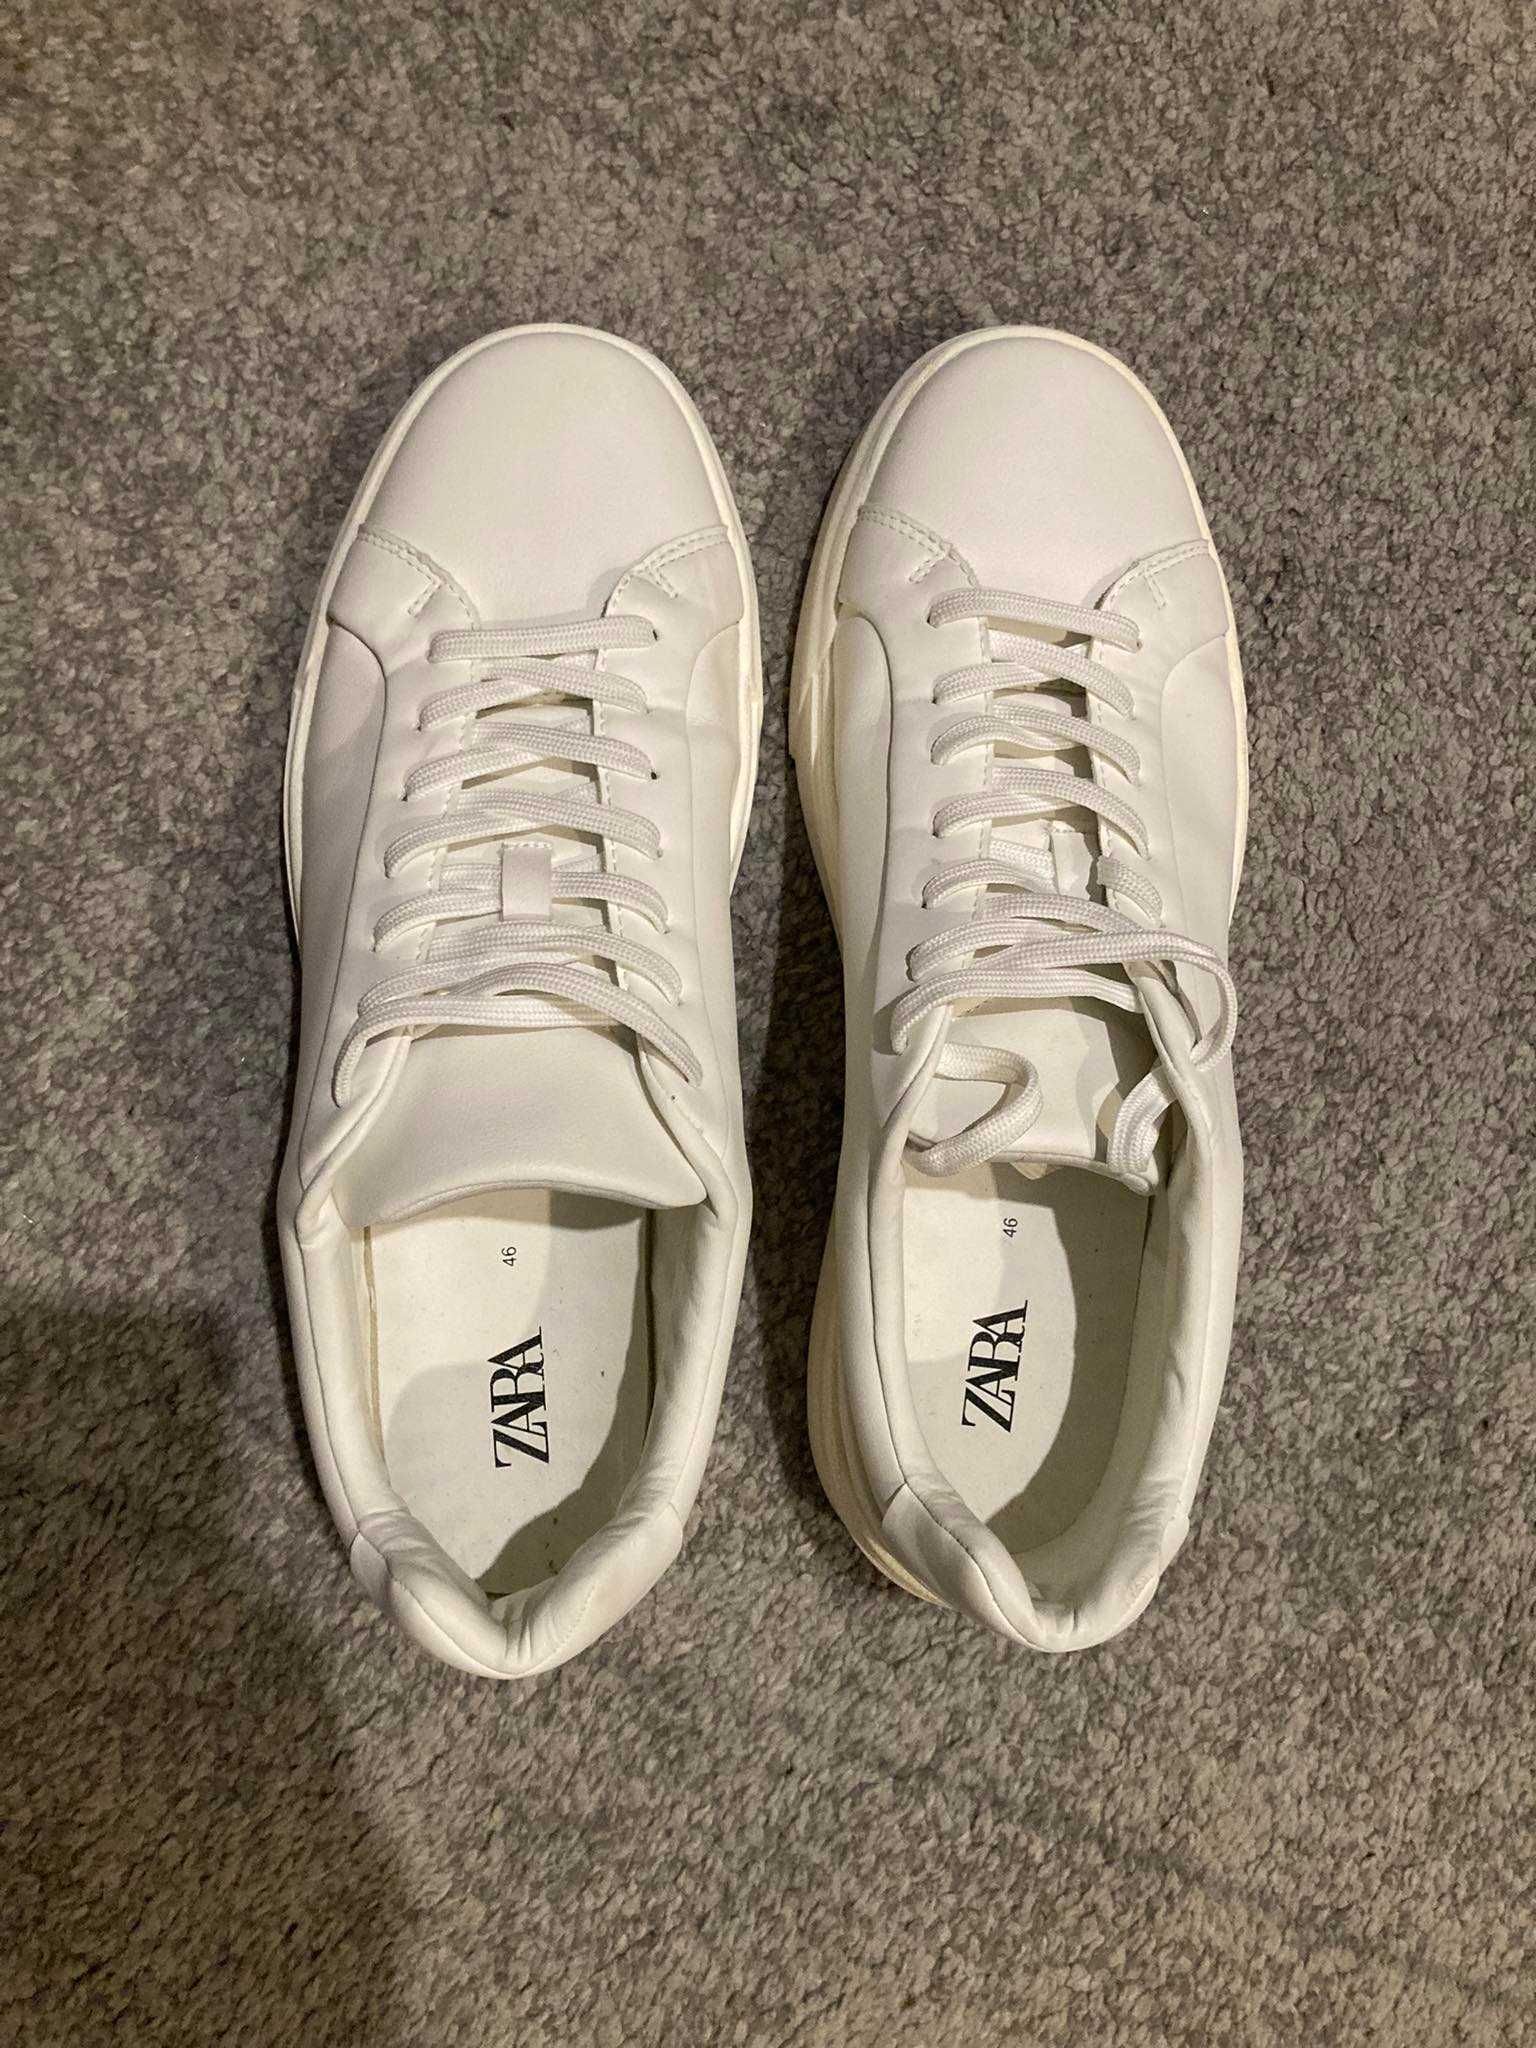 Buty męskie Zara białe sneakersy rozmiar 46